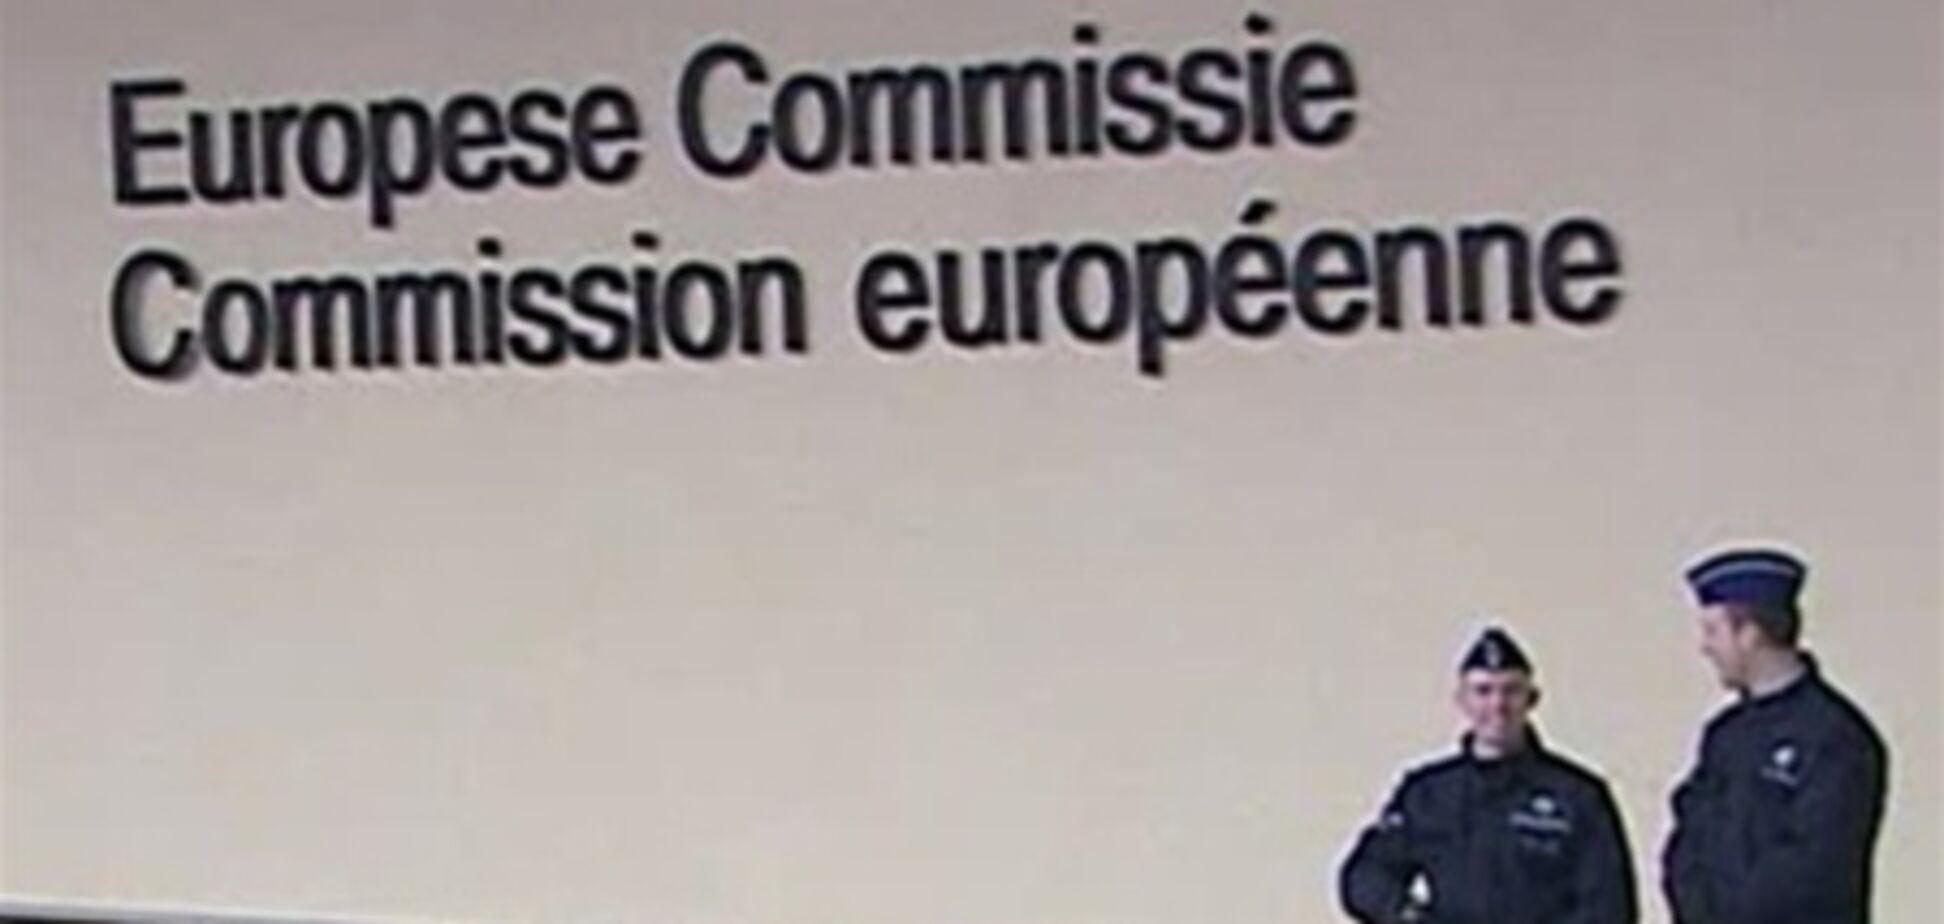 Через скандал з американською прослушкою в Єврокомісії шукають 'жучки'